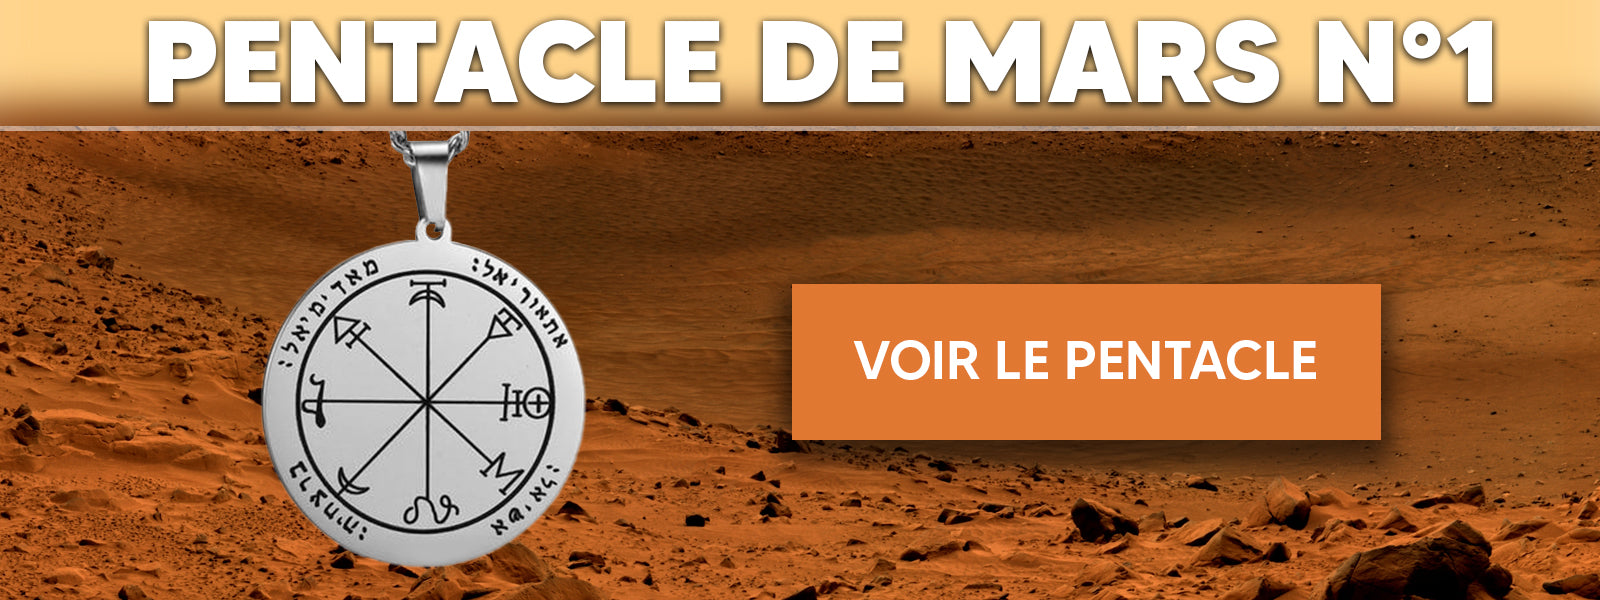 Pentacle de Mars 1